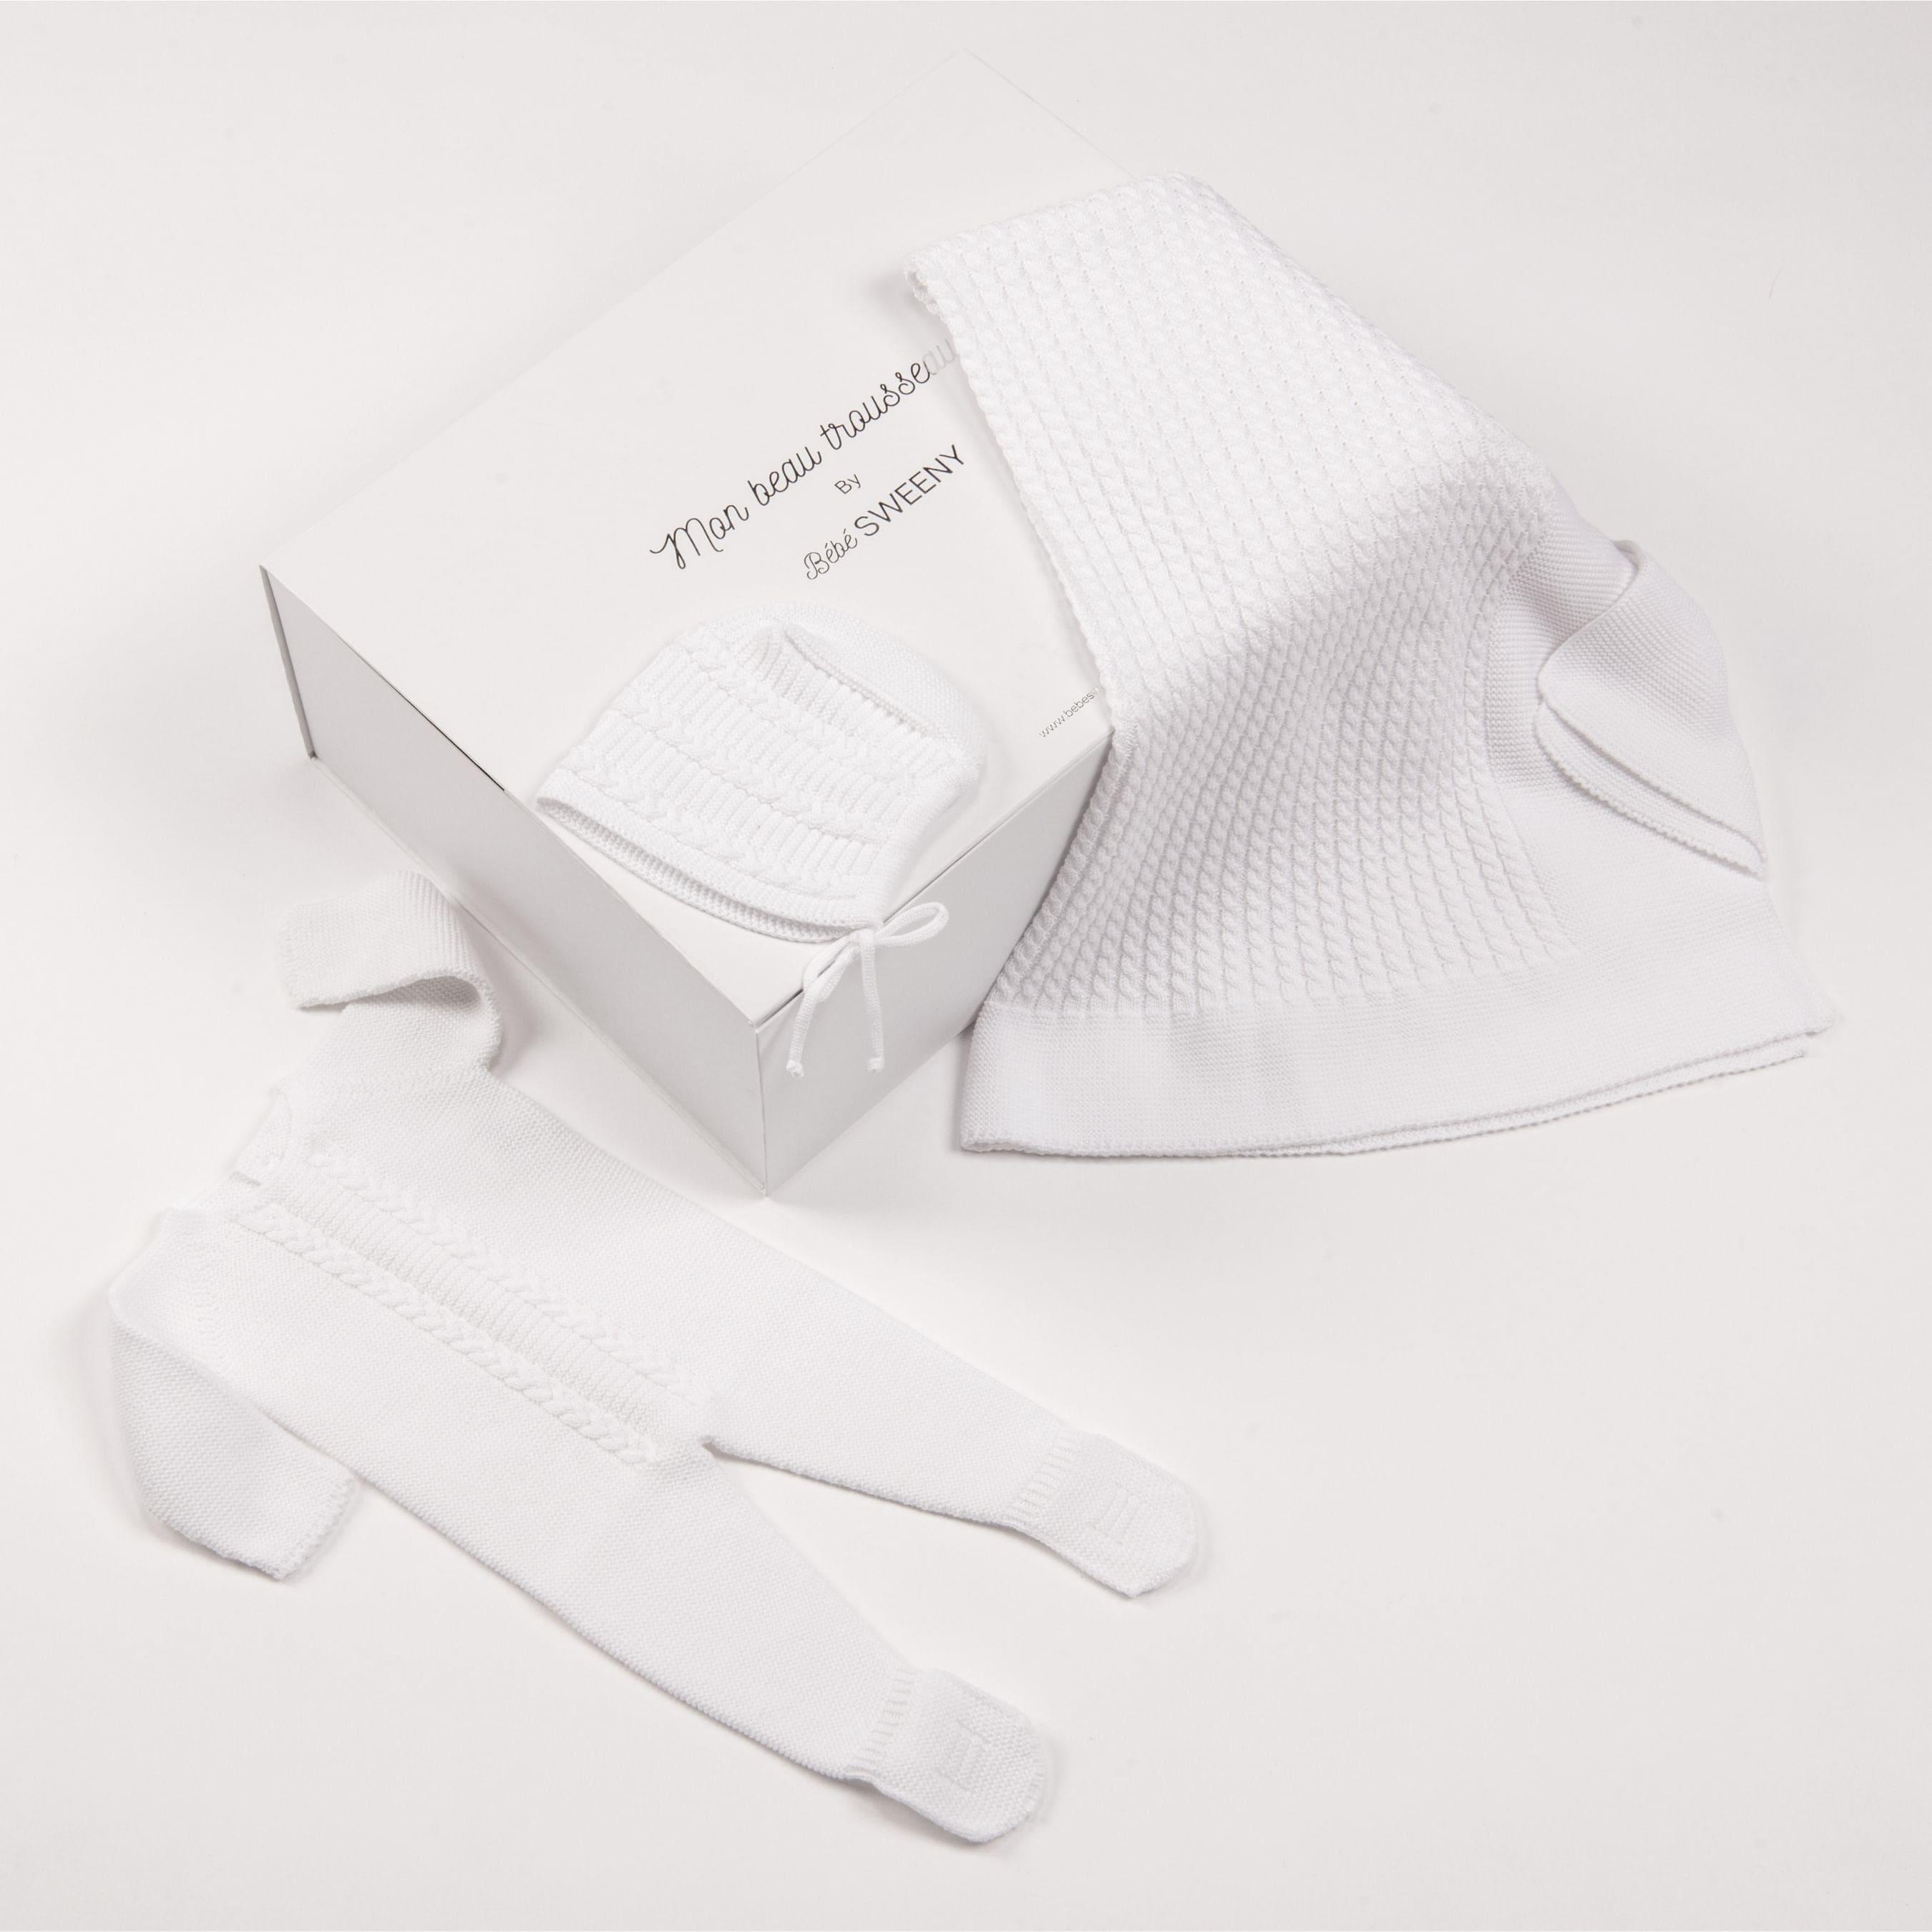 Miel | White Cotton Knit Babygrow Gift Set